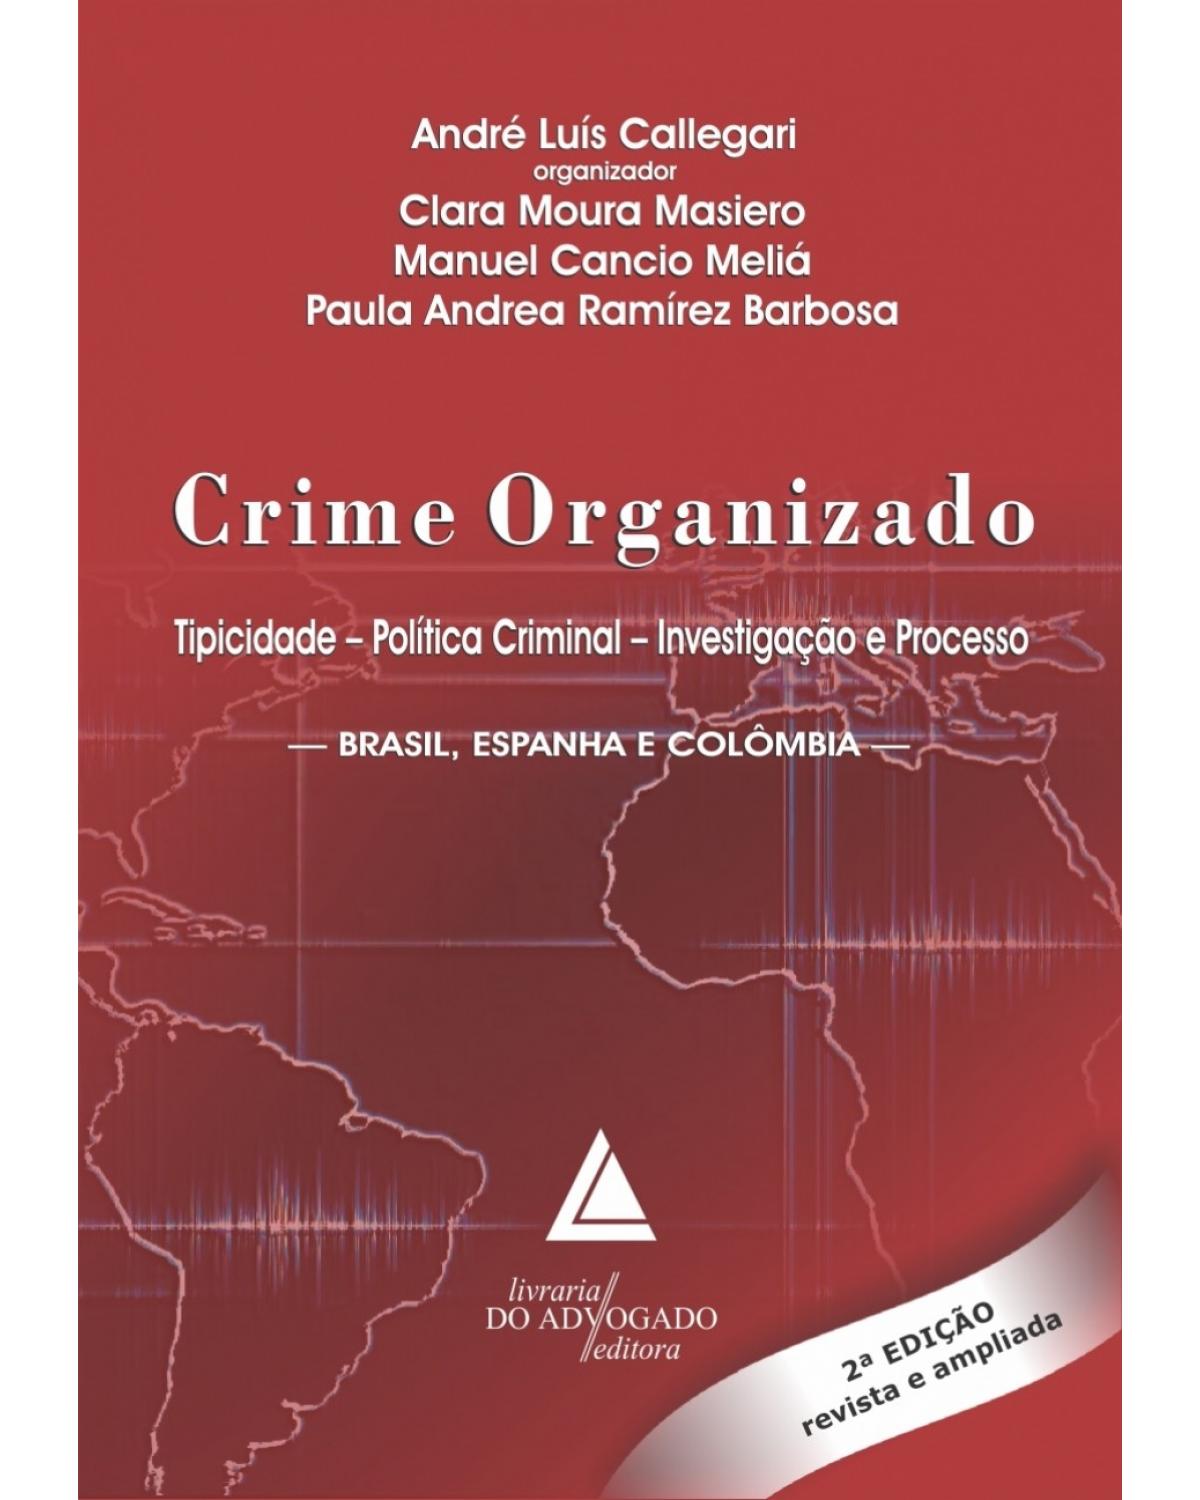 Crime organizado: Tipicidade, política criminal, investigação e processo - Brasil, Espanha e Colômbia - 2ª Edição